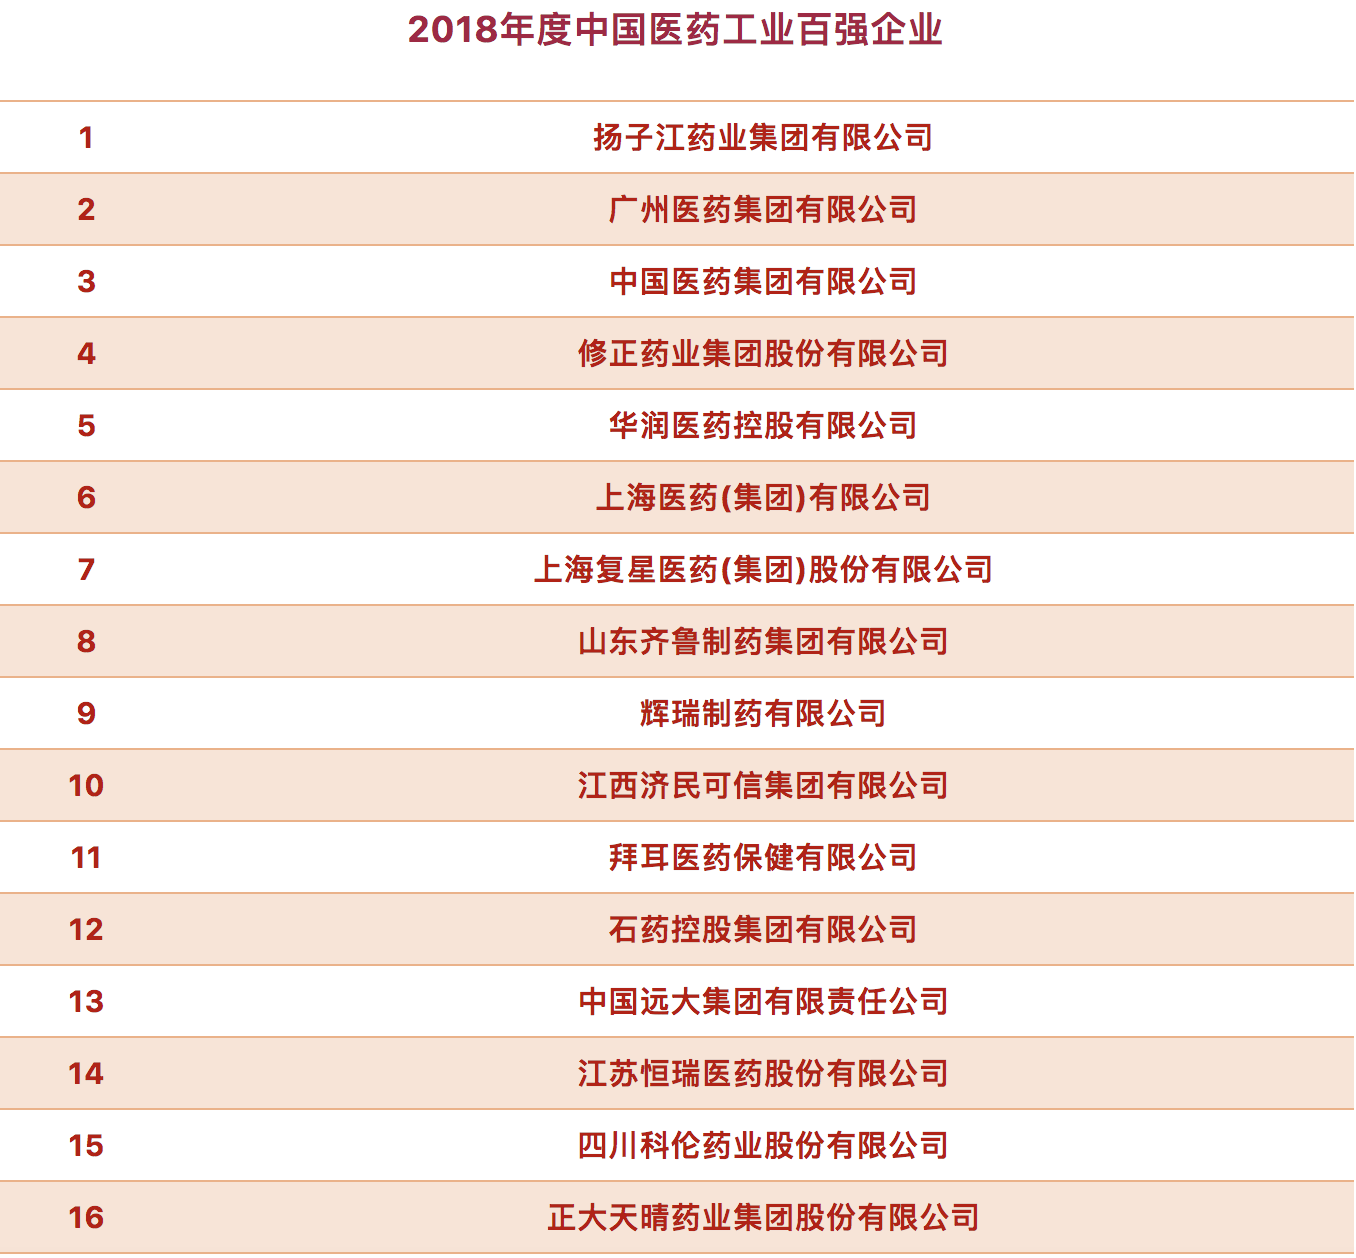 2018年度中国<font color="red">医药工业</font>百强榜发布！